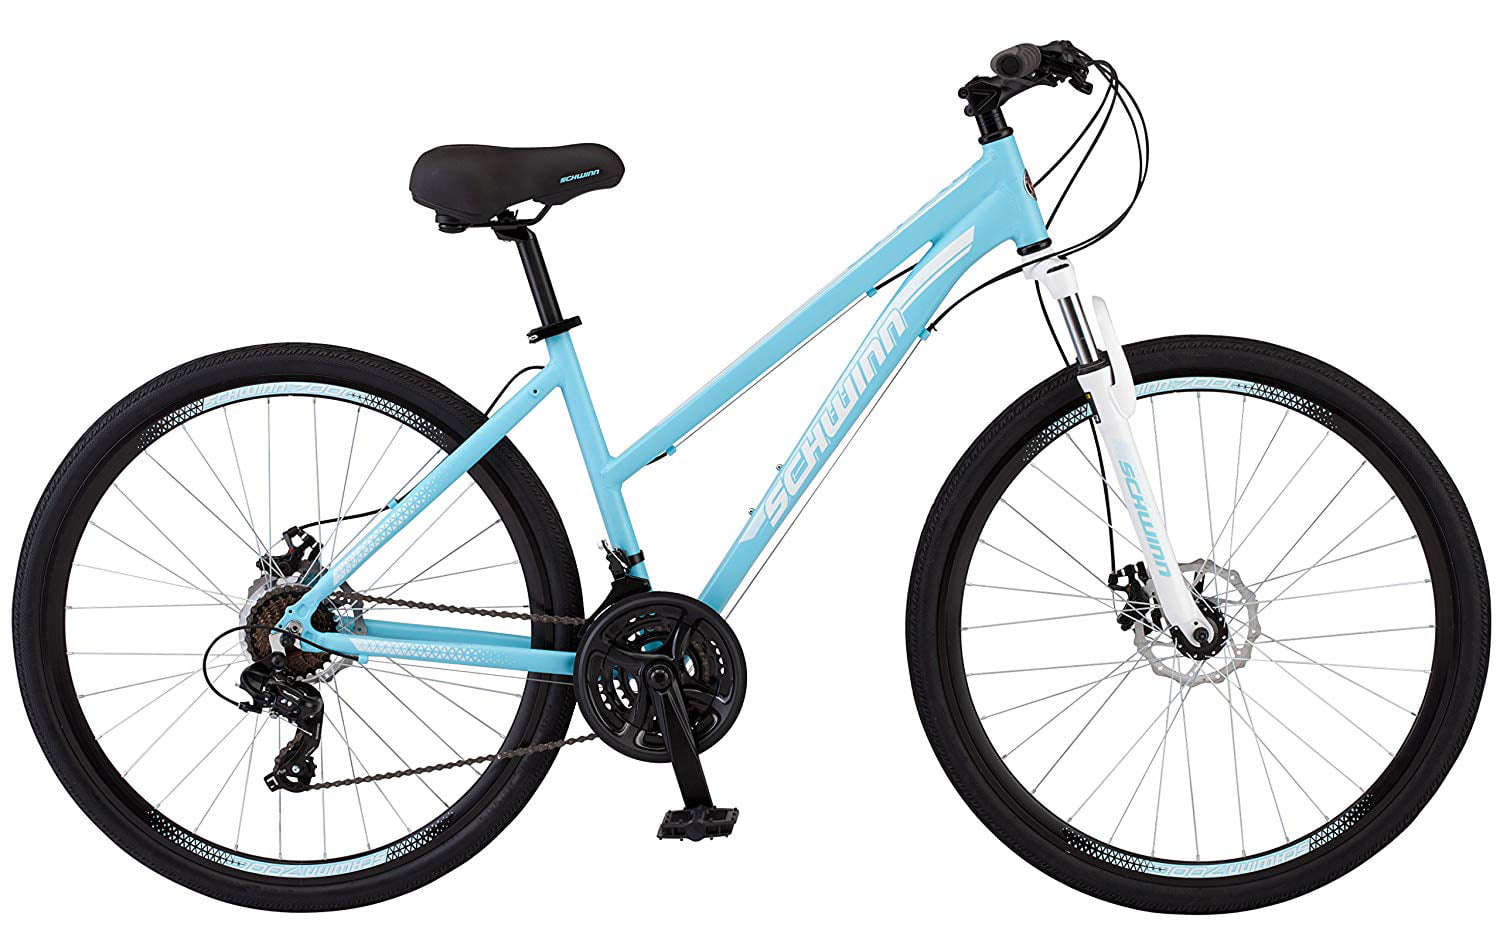 Ga door opzettelijk activering Schwinn GTX 2 Bicycle 700 C, Women's Cross-Commuter, Light Blue -  Walmart.com